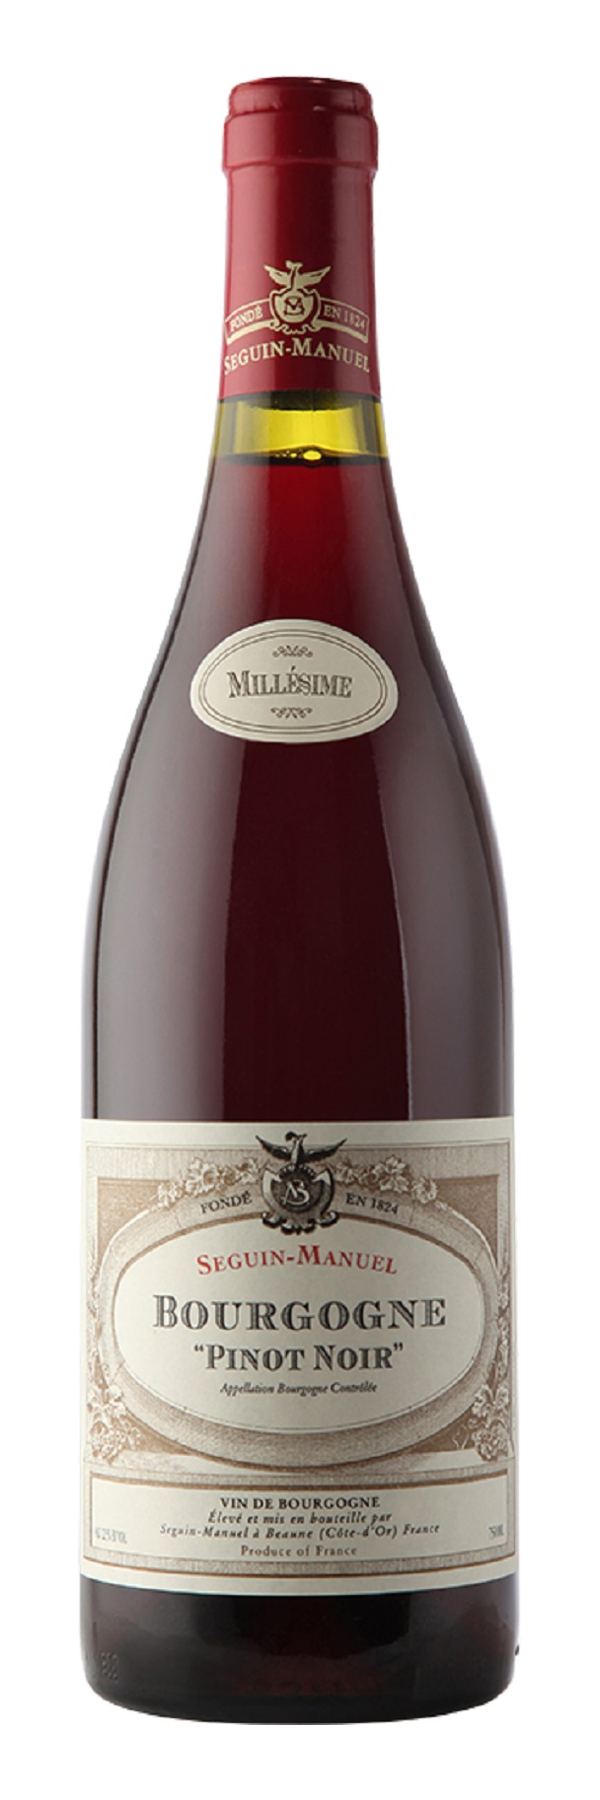 Noir 0,75l | LAKAAF.DE Seguin-Manuel Shop 2020 Bourgogne Wein Pinot